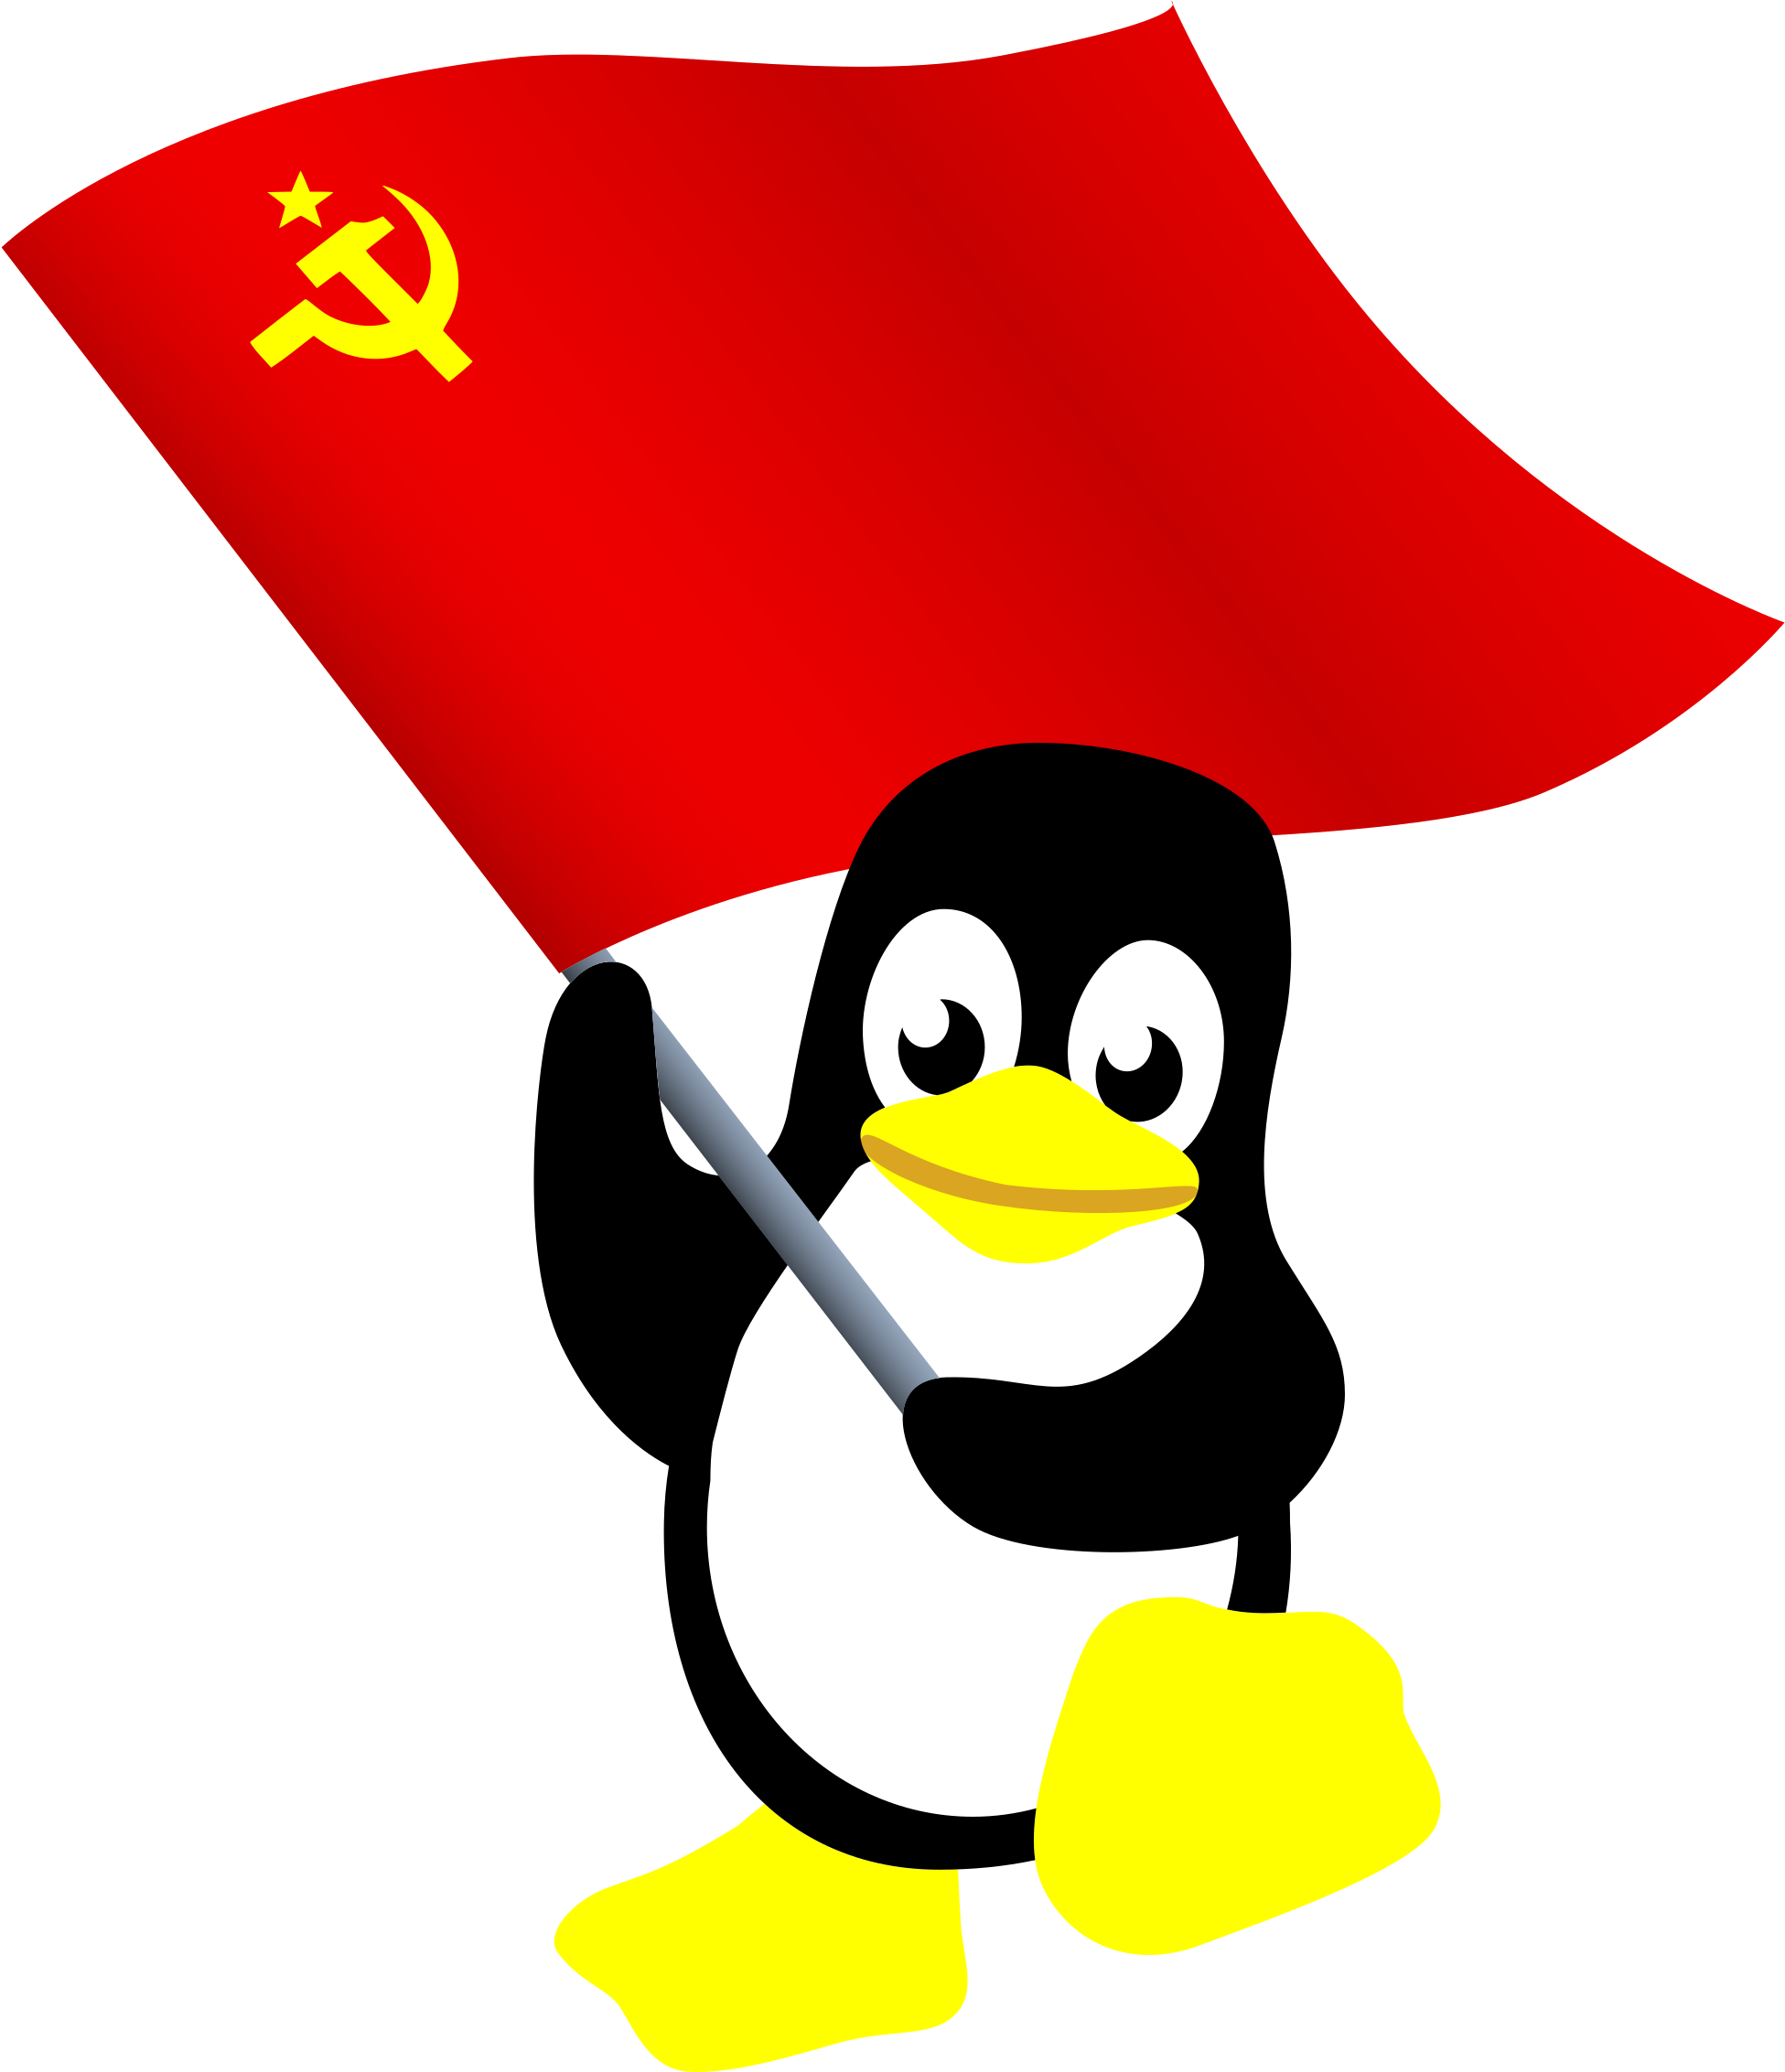 Учебное пособие “Первое знакомство с Linux”